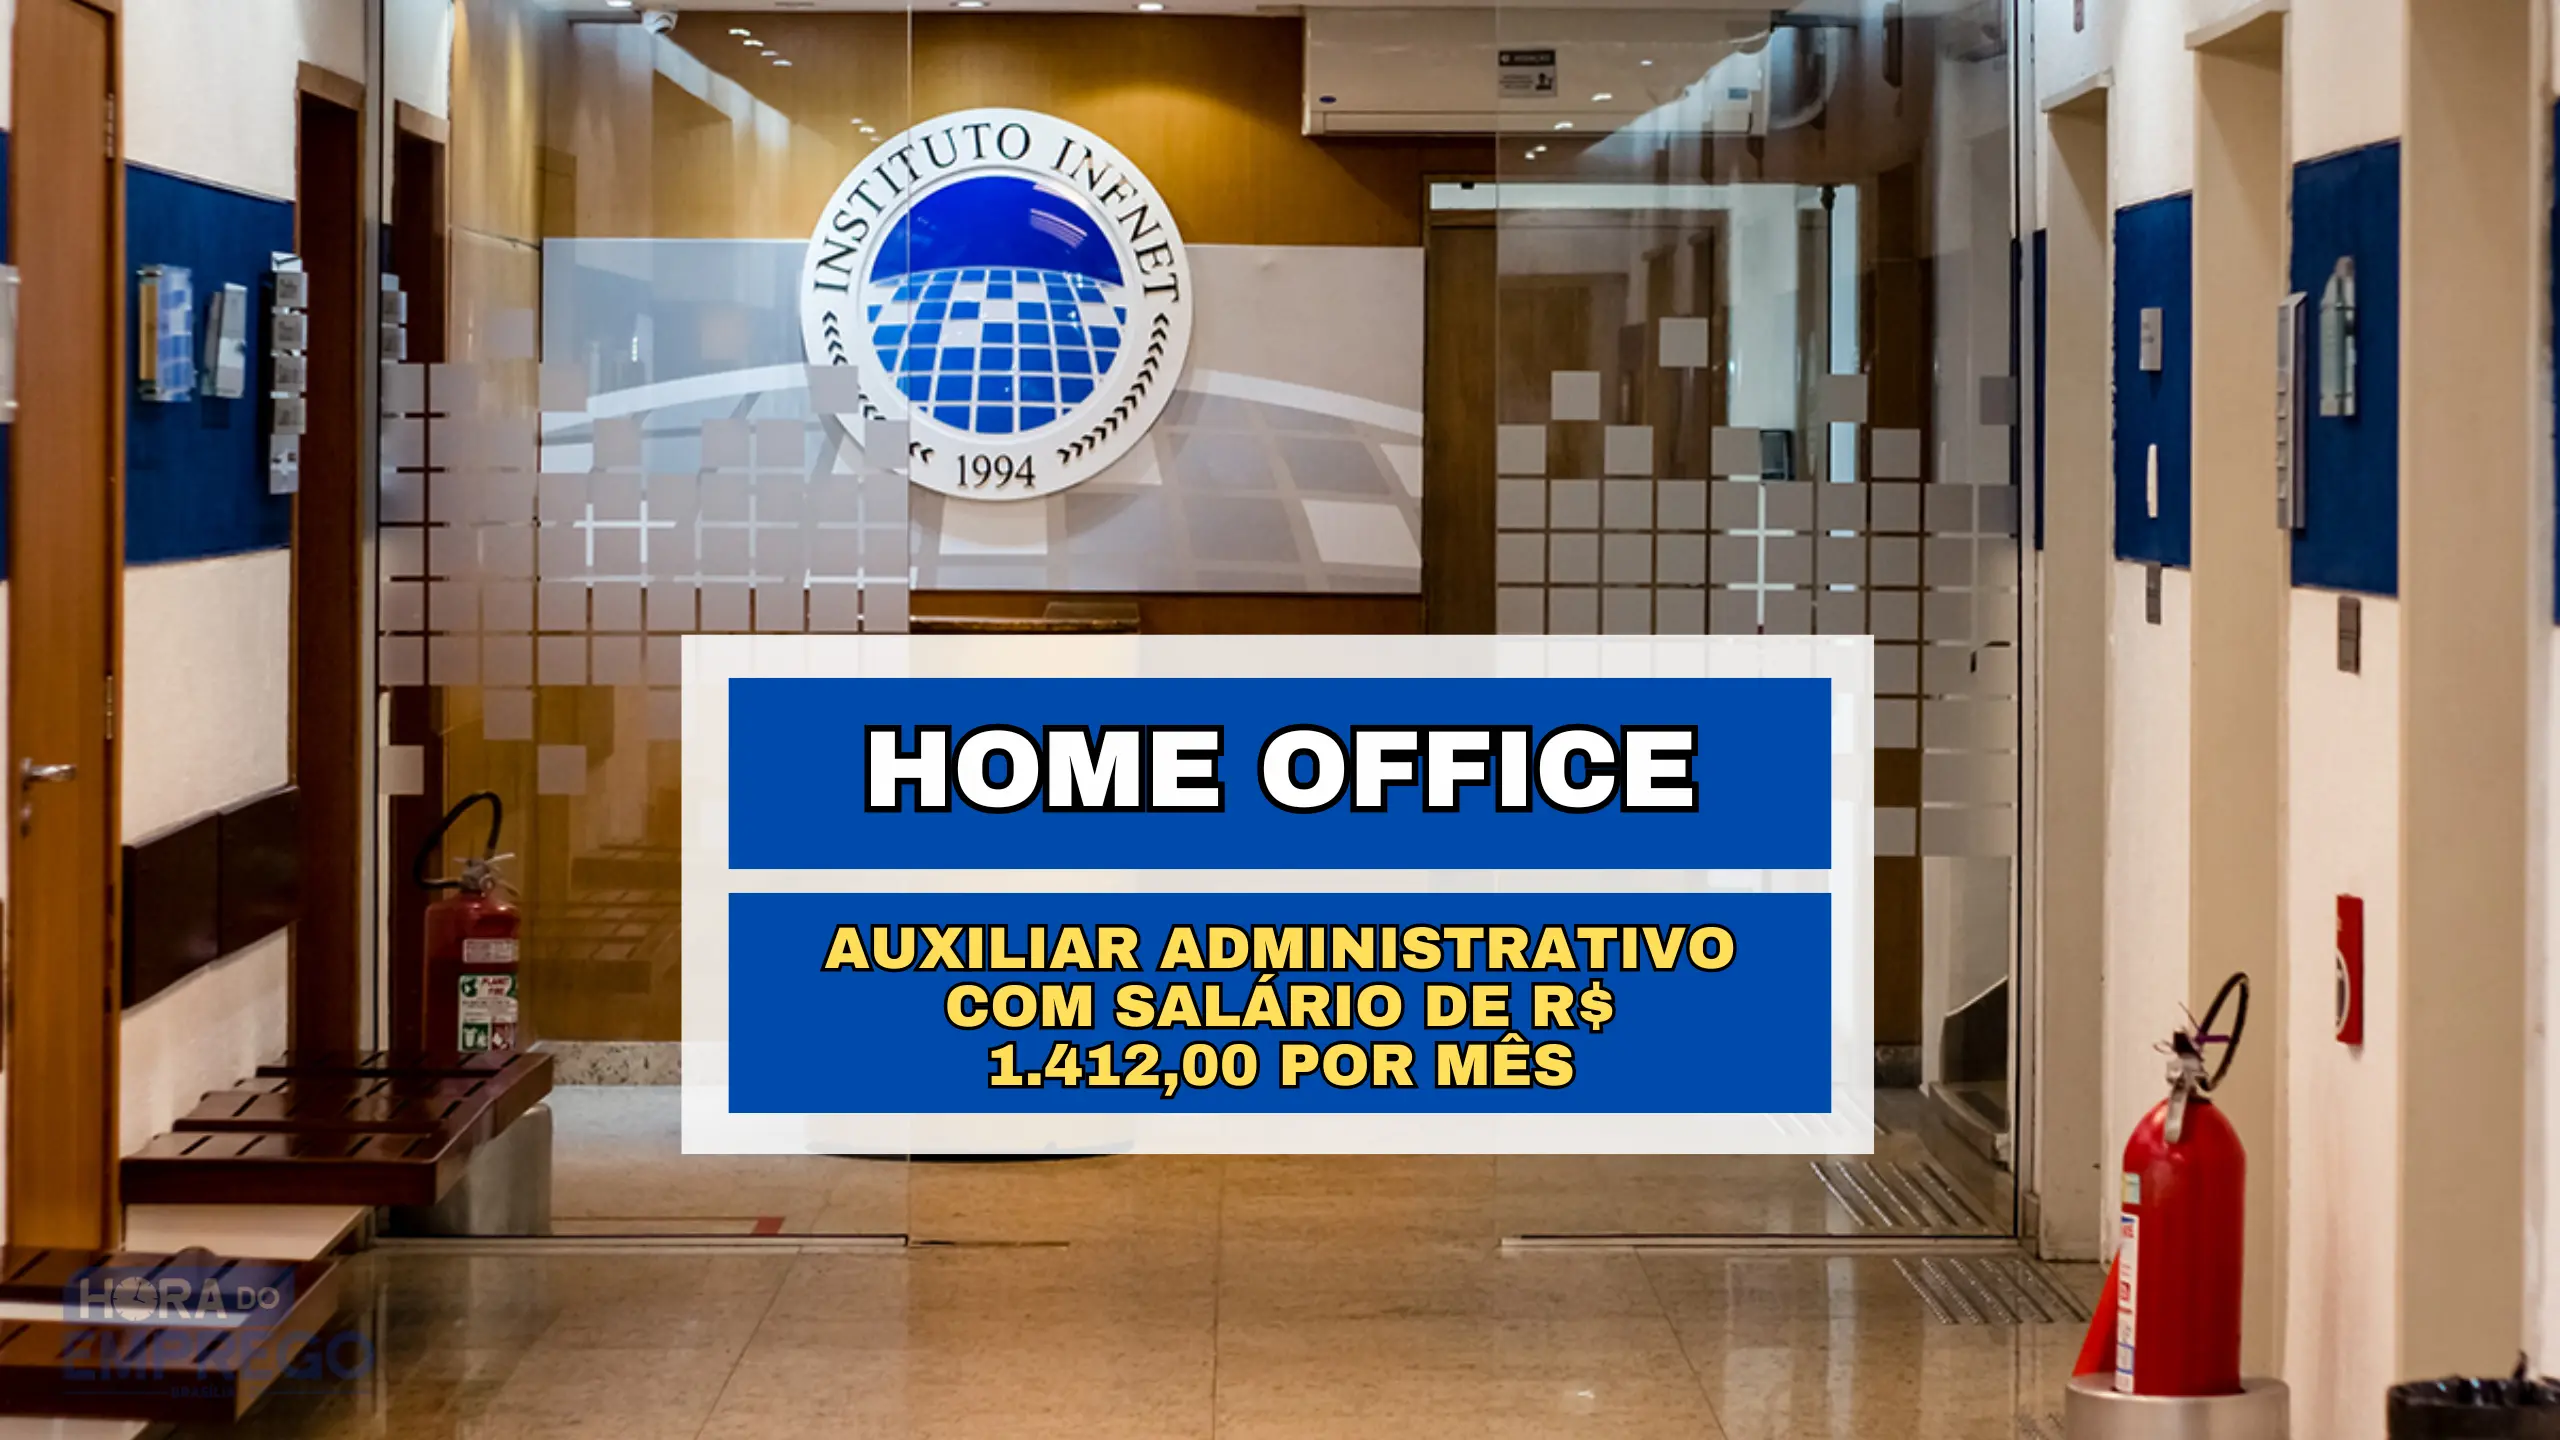 100% Remoto! Instituto Infnet abre vaga HOME OFFICE para Auxiliar Administrativo com salário de R$ 1.412,00 por mês